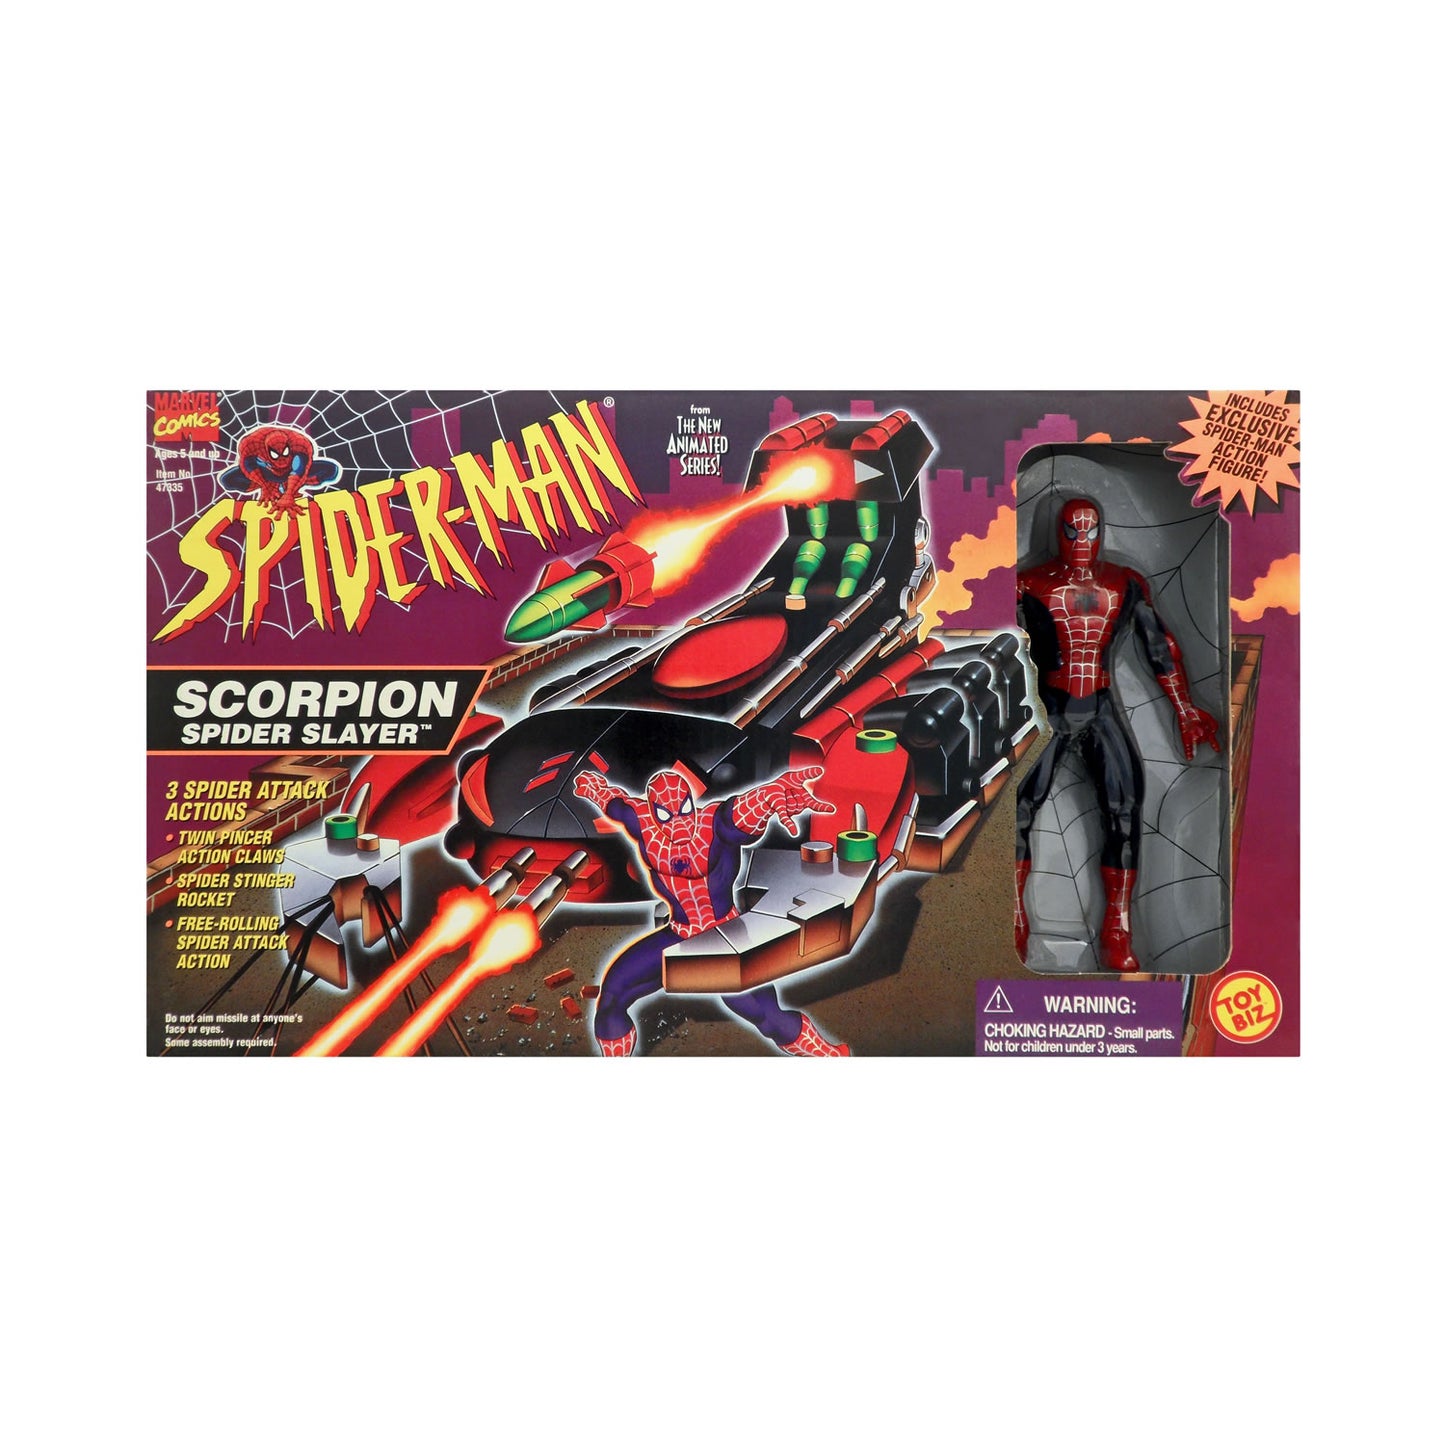 Scorpion Spider-Slayer from Spider-Man